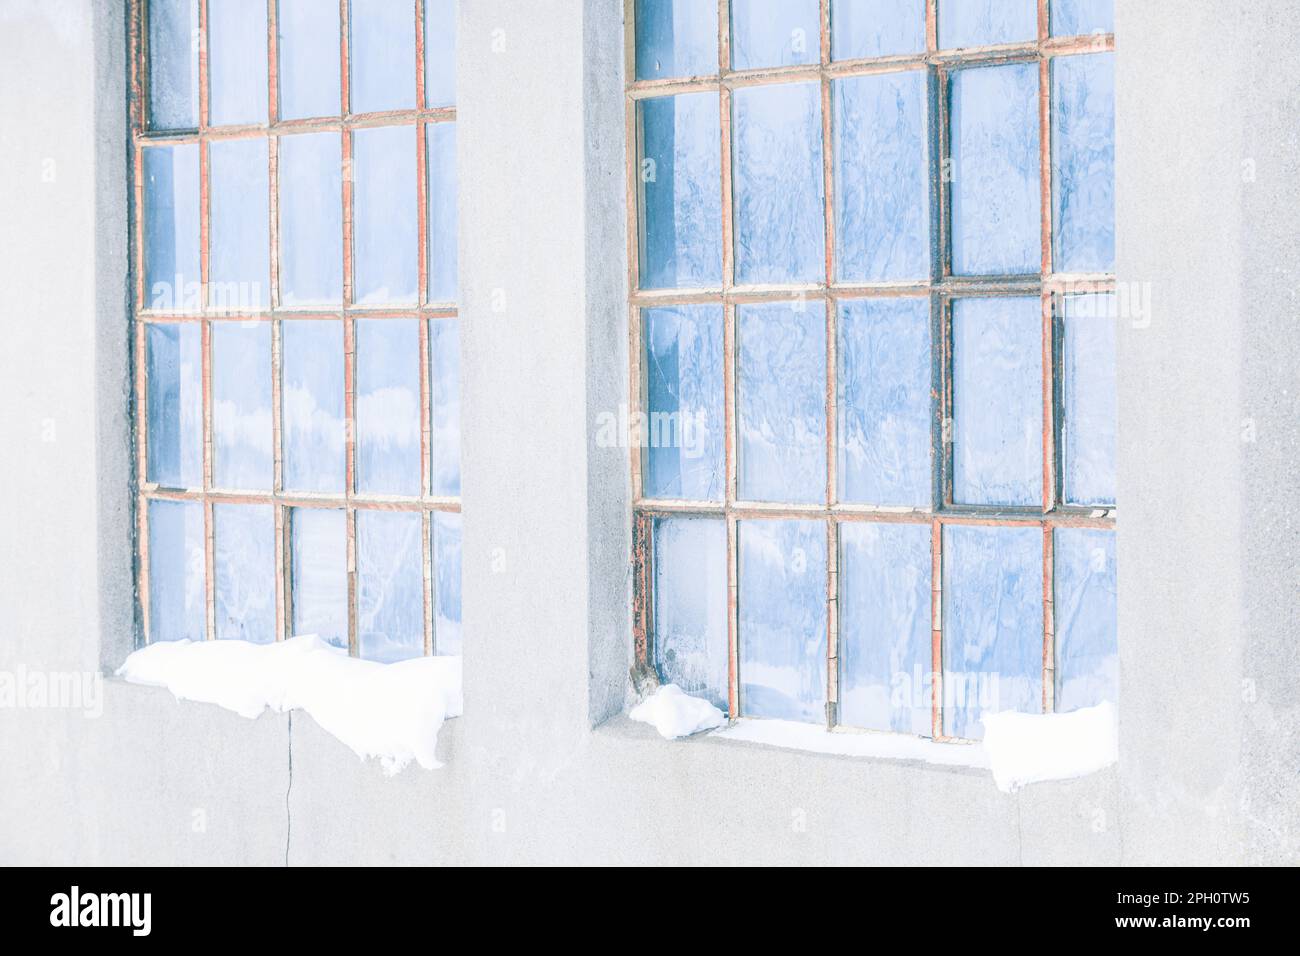 Un vecchio e logoro edificio in Svezia immerso nella luce blu del luminoso giorno all'esterno, si erge come un ricordo storico del passato industriale countrys. Foto Stock